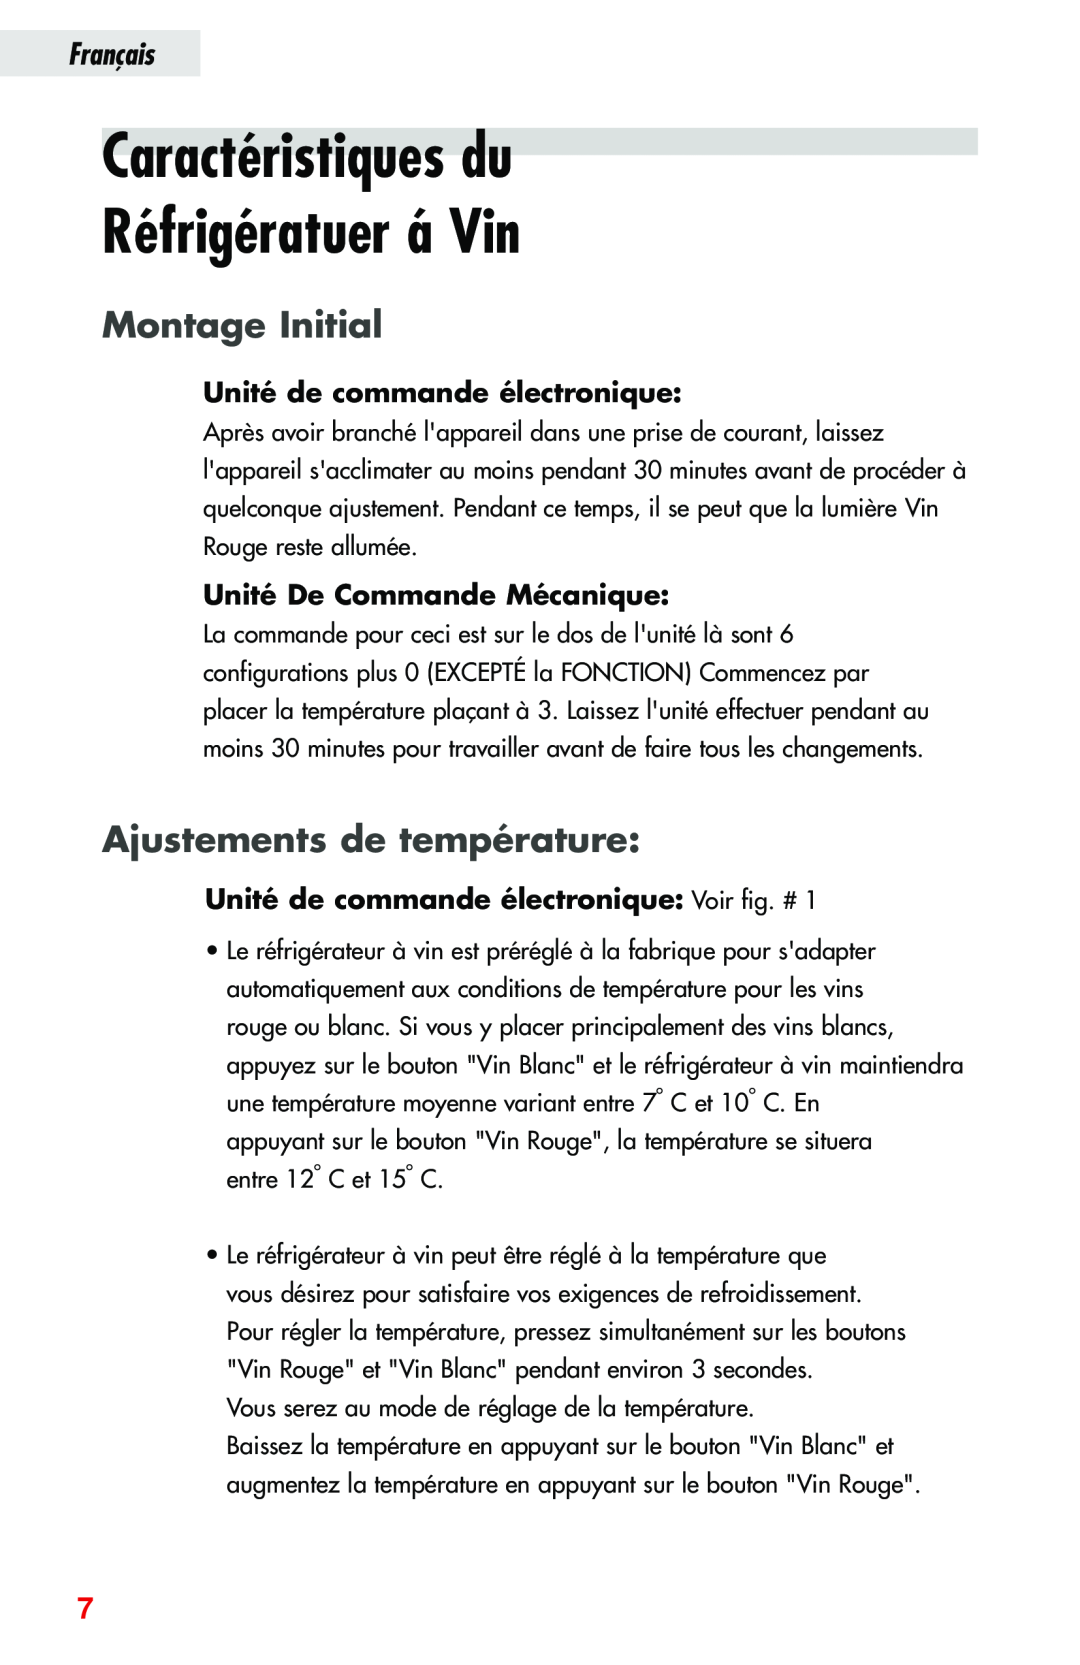 Haier JC-82GB manual Caractéristiques du Réfrigératuer á Vin, Montage Initial, Ajustements de température, Français 